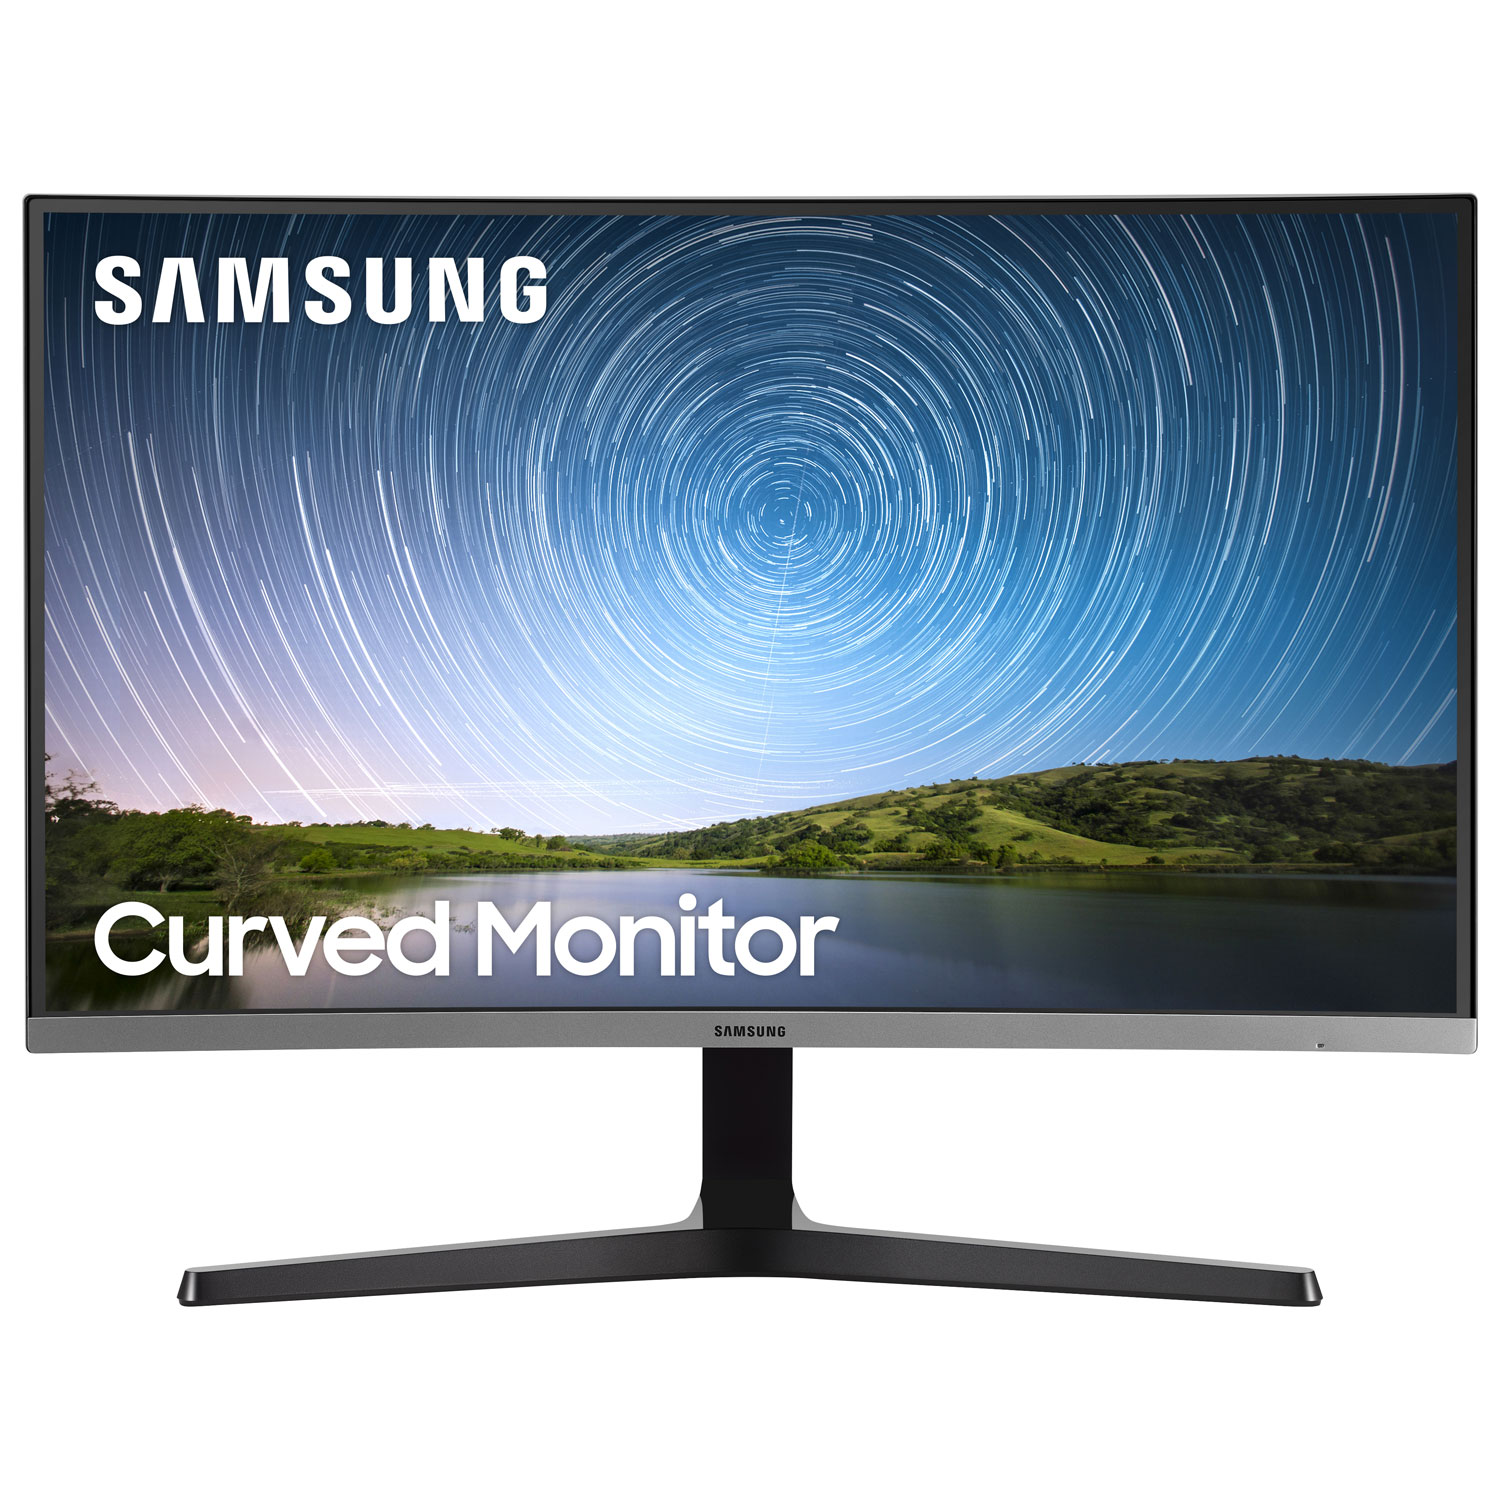 Samsung 32" FHD 75Hz 4ms GTG Curved VA LED FreeSync Monitor (LC32R500) - Dark Blue Grey